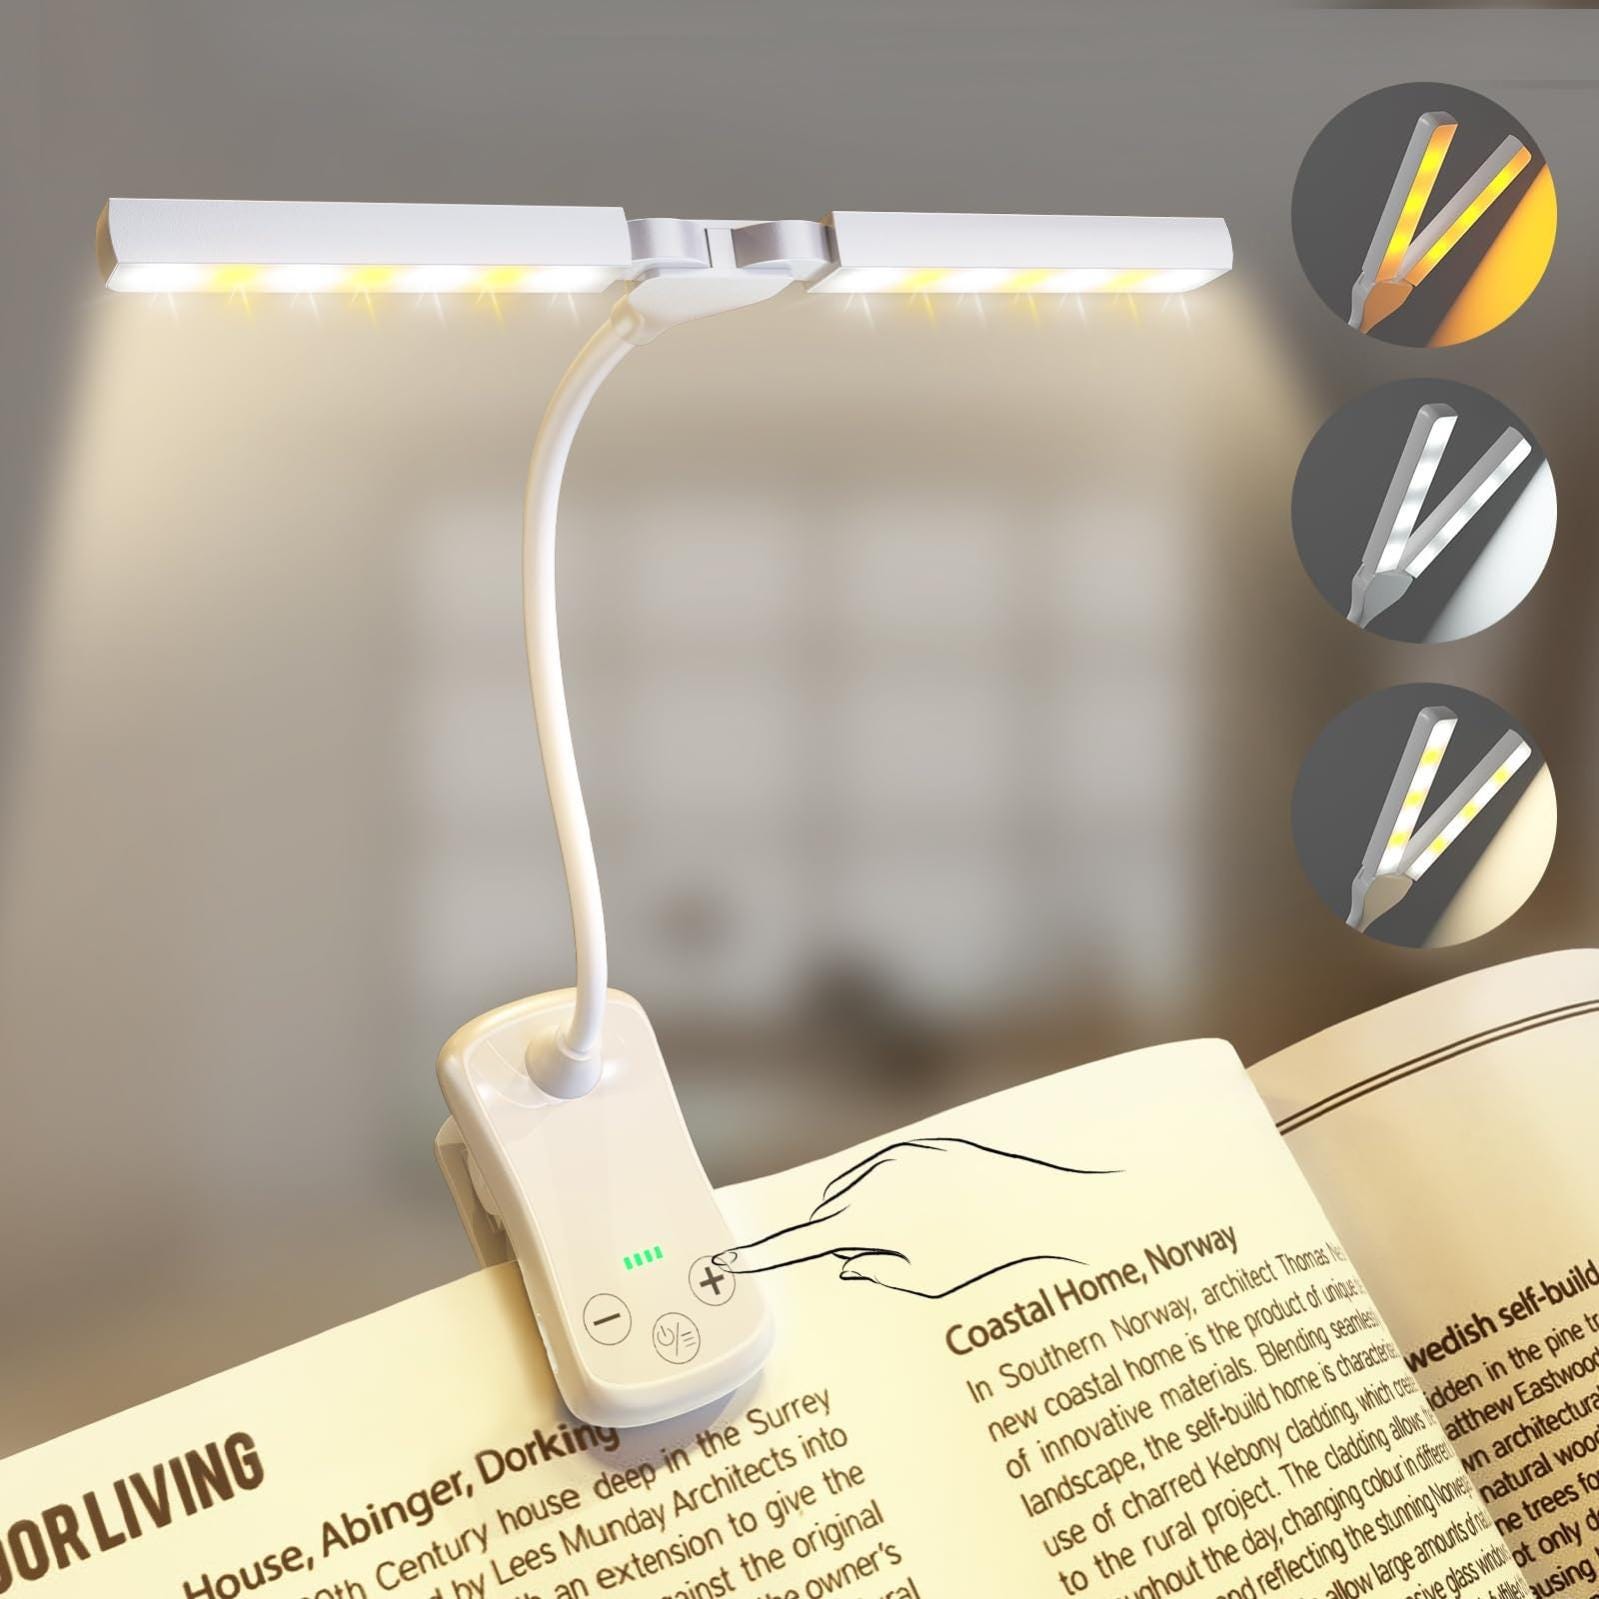 Liseuse Lampe de Lecture de Cou - Rechargeable Lampe Lecture au Lit, 3  Couleurs Liseuse LED Flexible